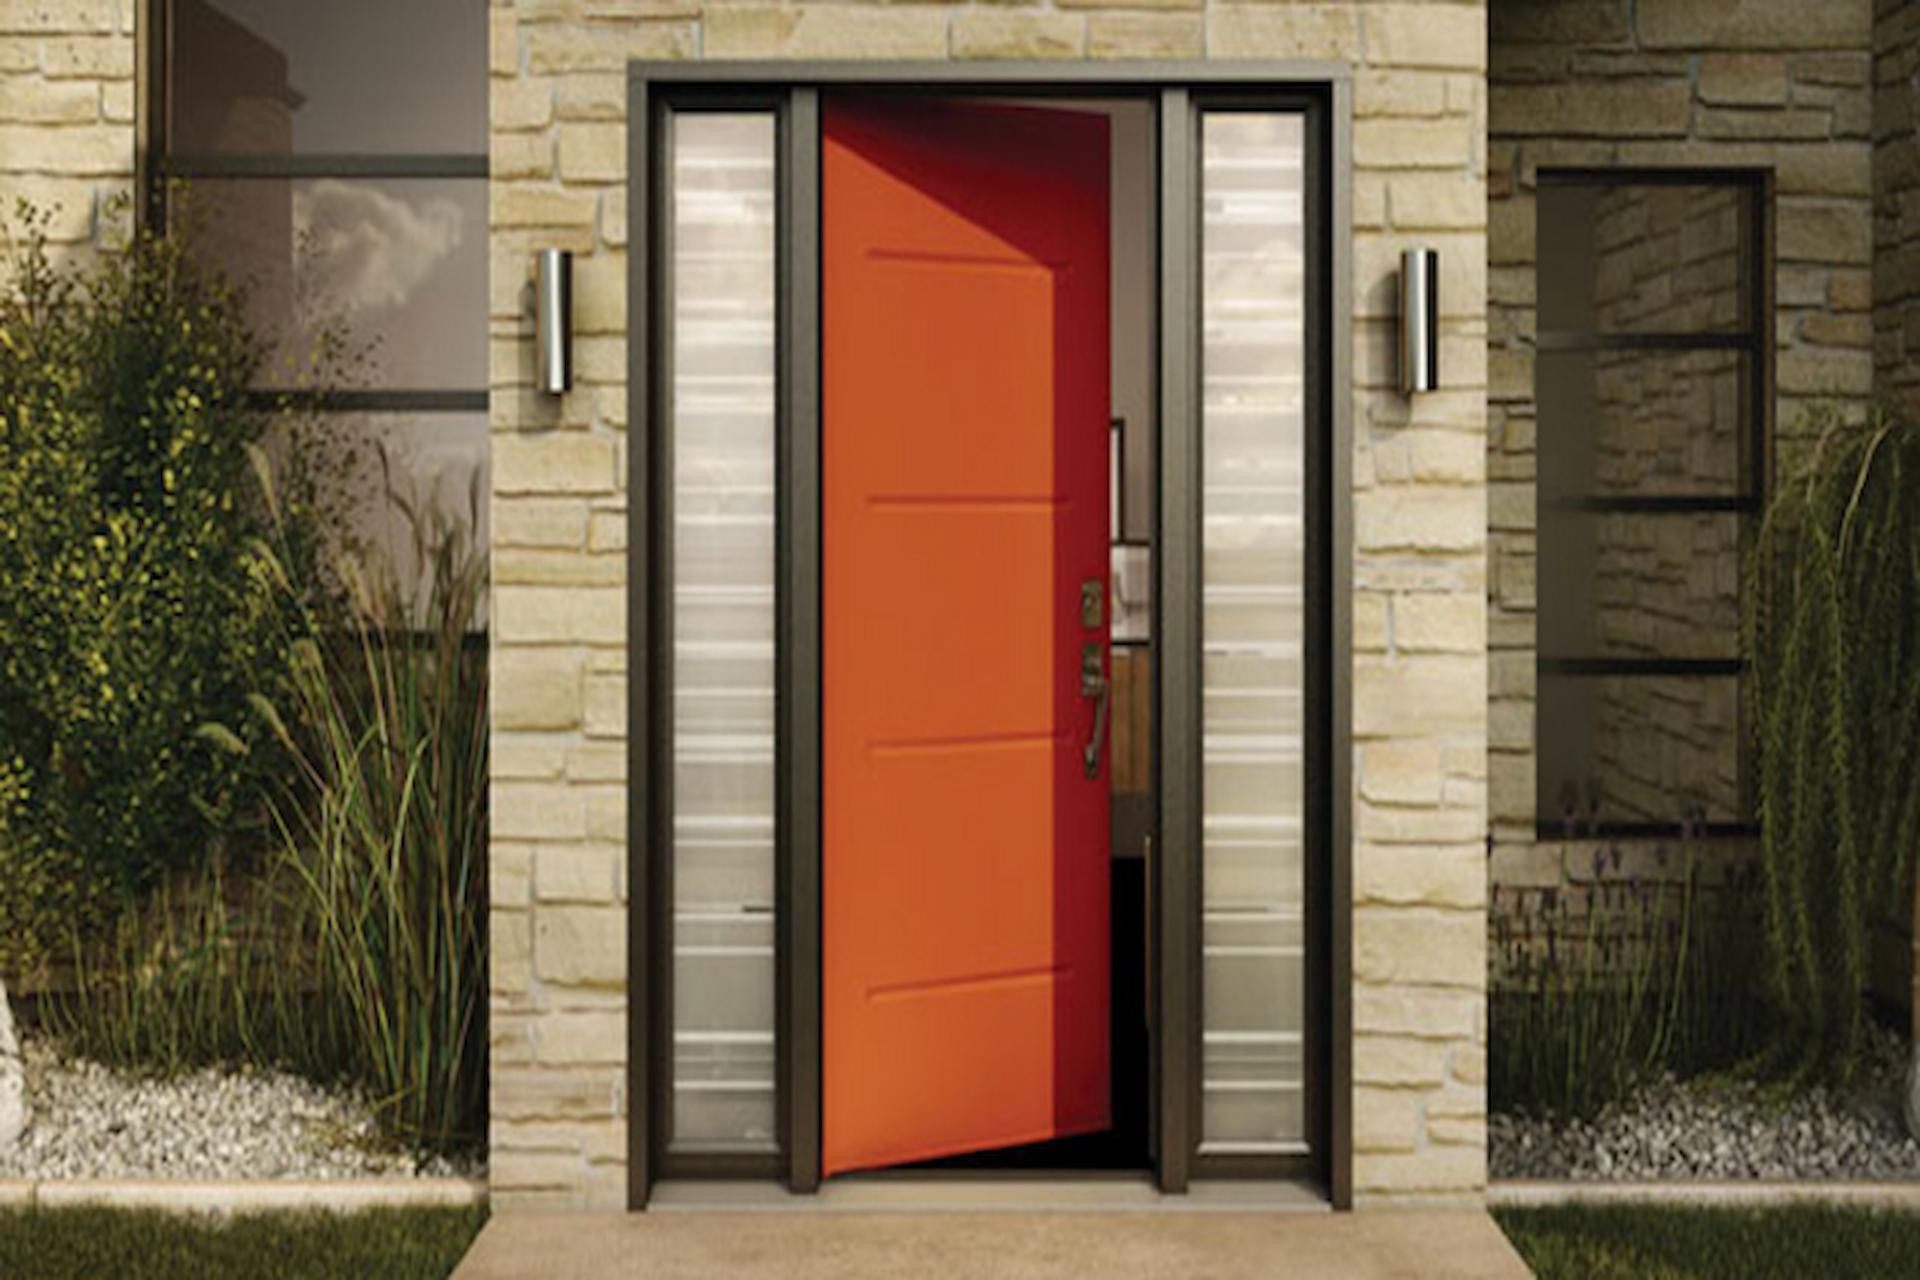 What Are Exclusive Benefits Of Installing A Ballistic Door?